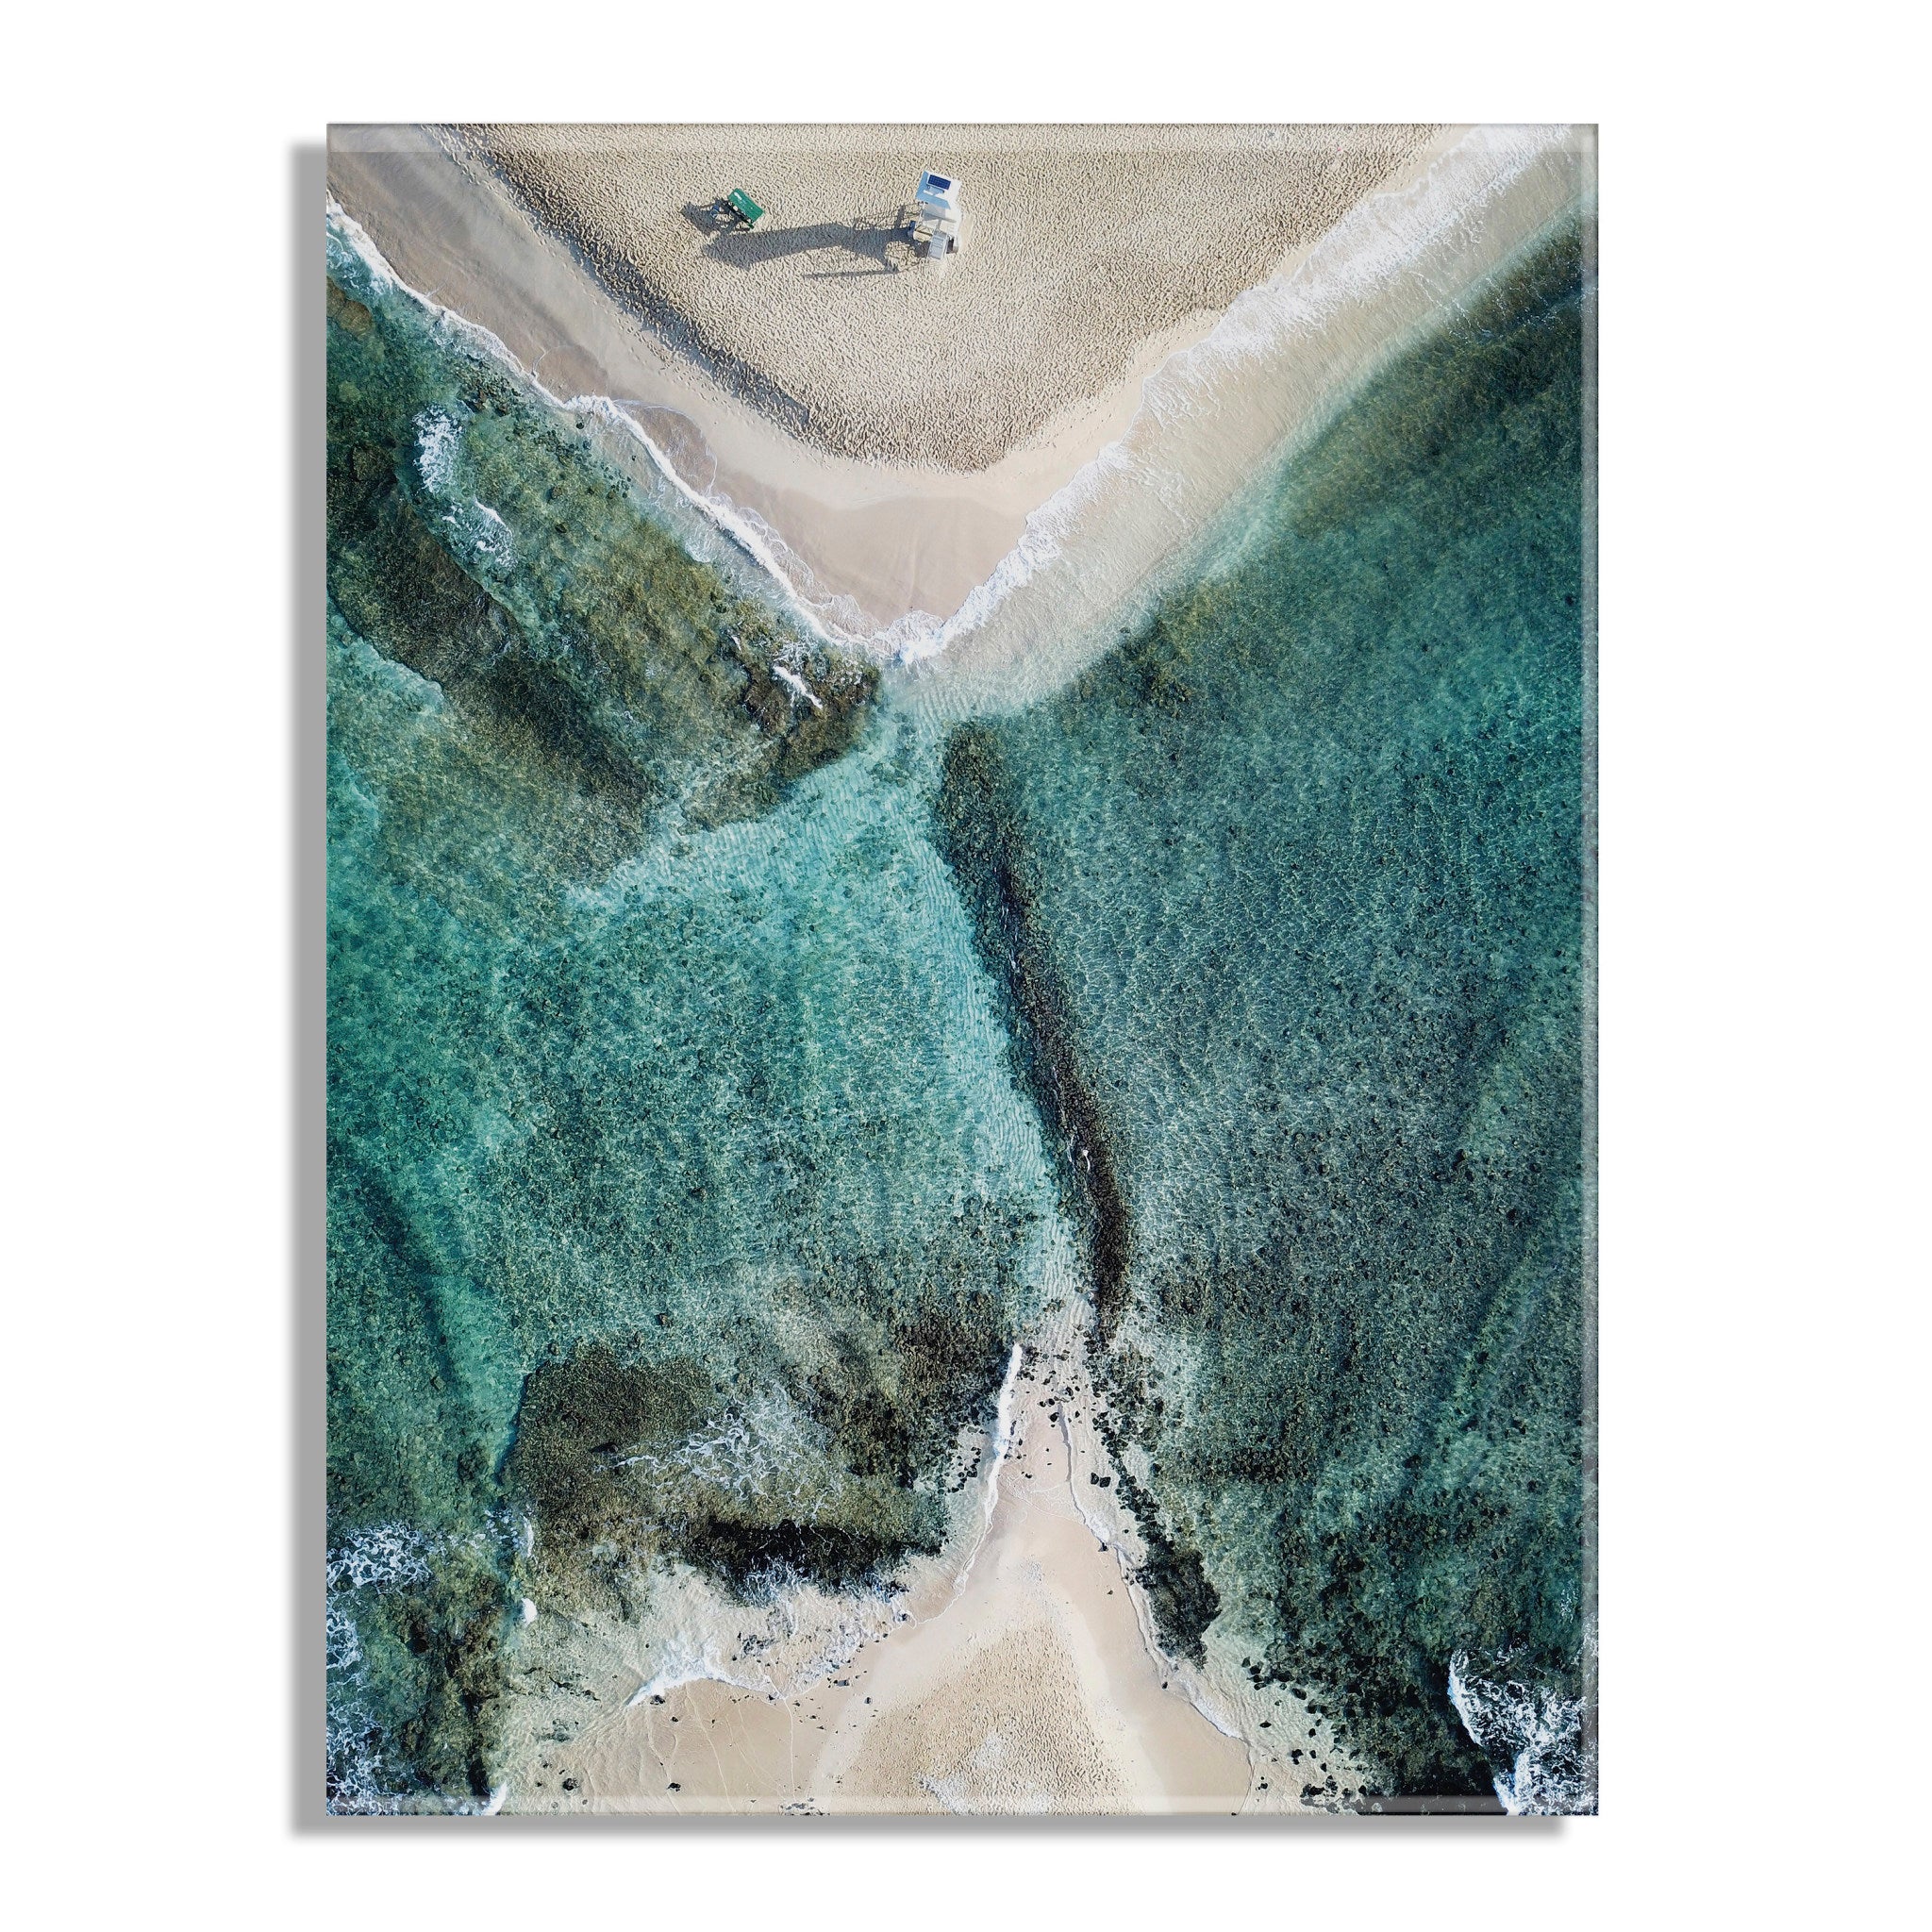 Poipu Beach Kauai Floating Acrylic Art by Rachel Bolgov